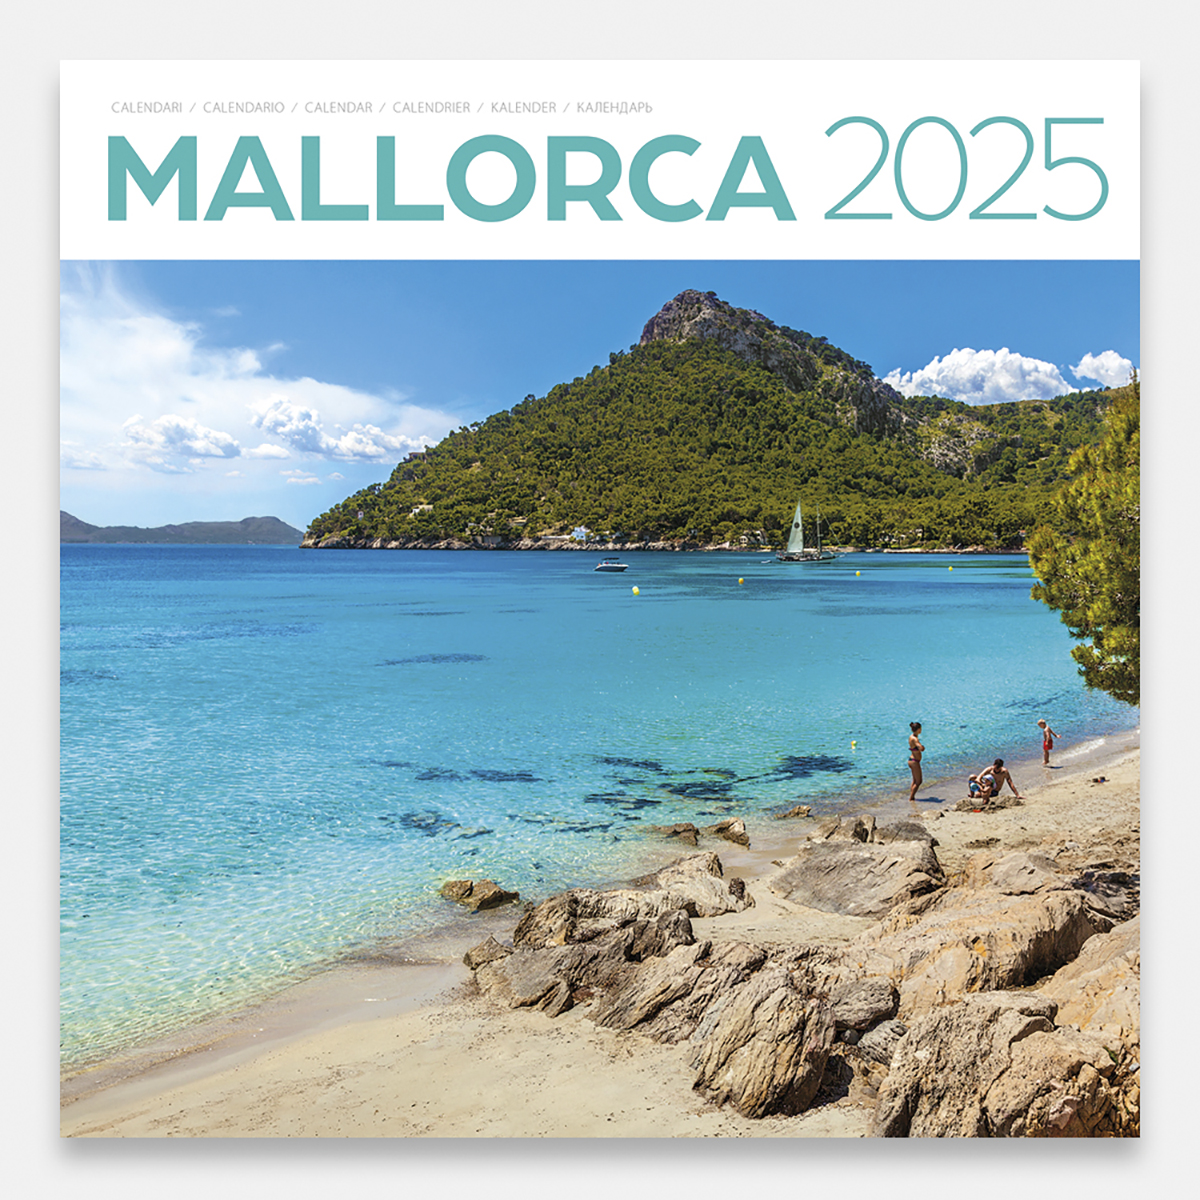 Calendrier 2025 Majorque 25mag1 calendario pared 2025 mallorca